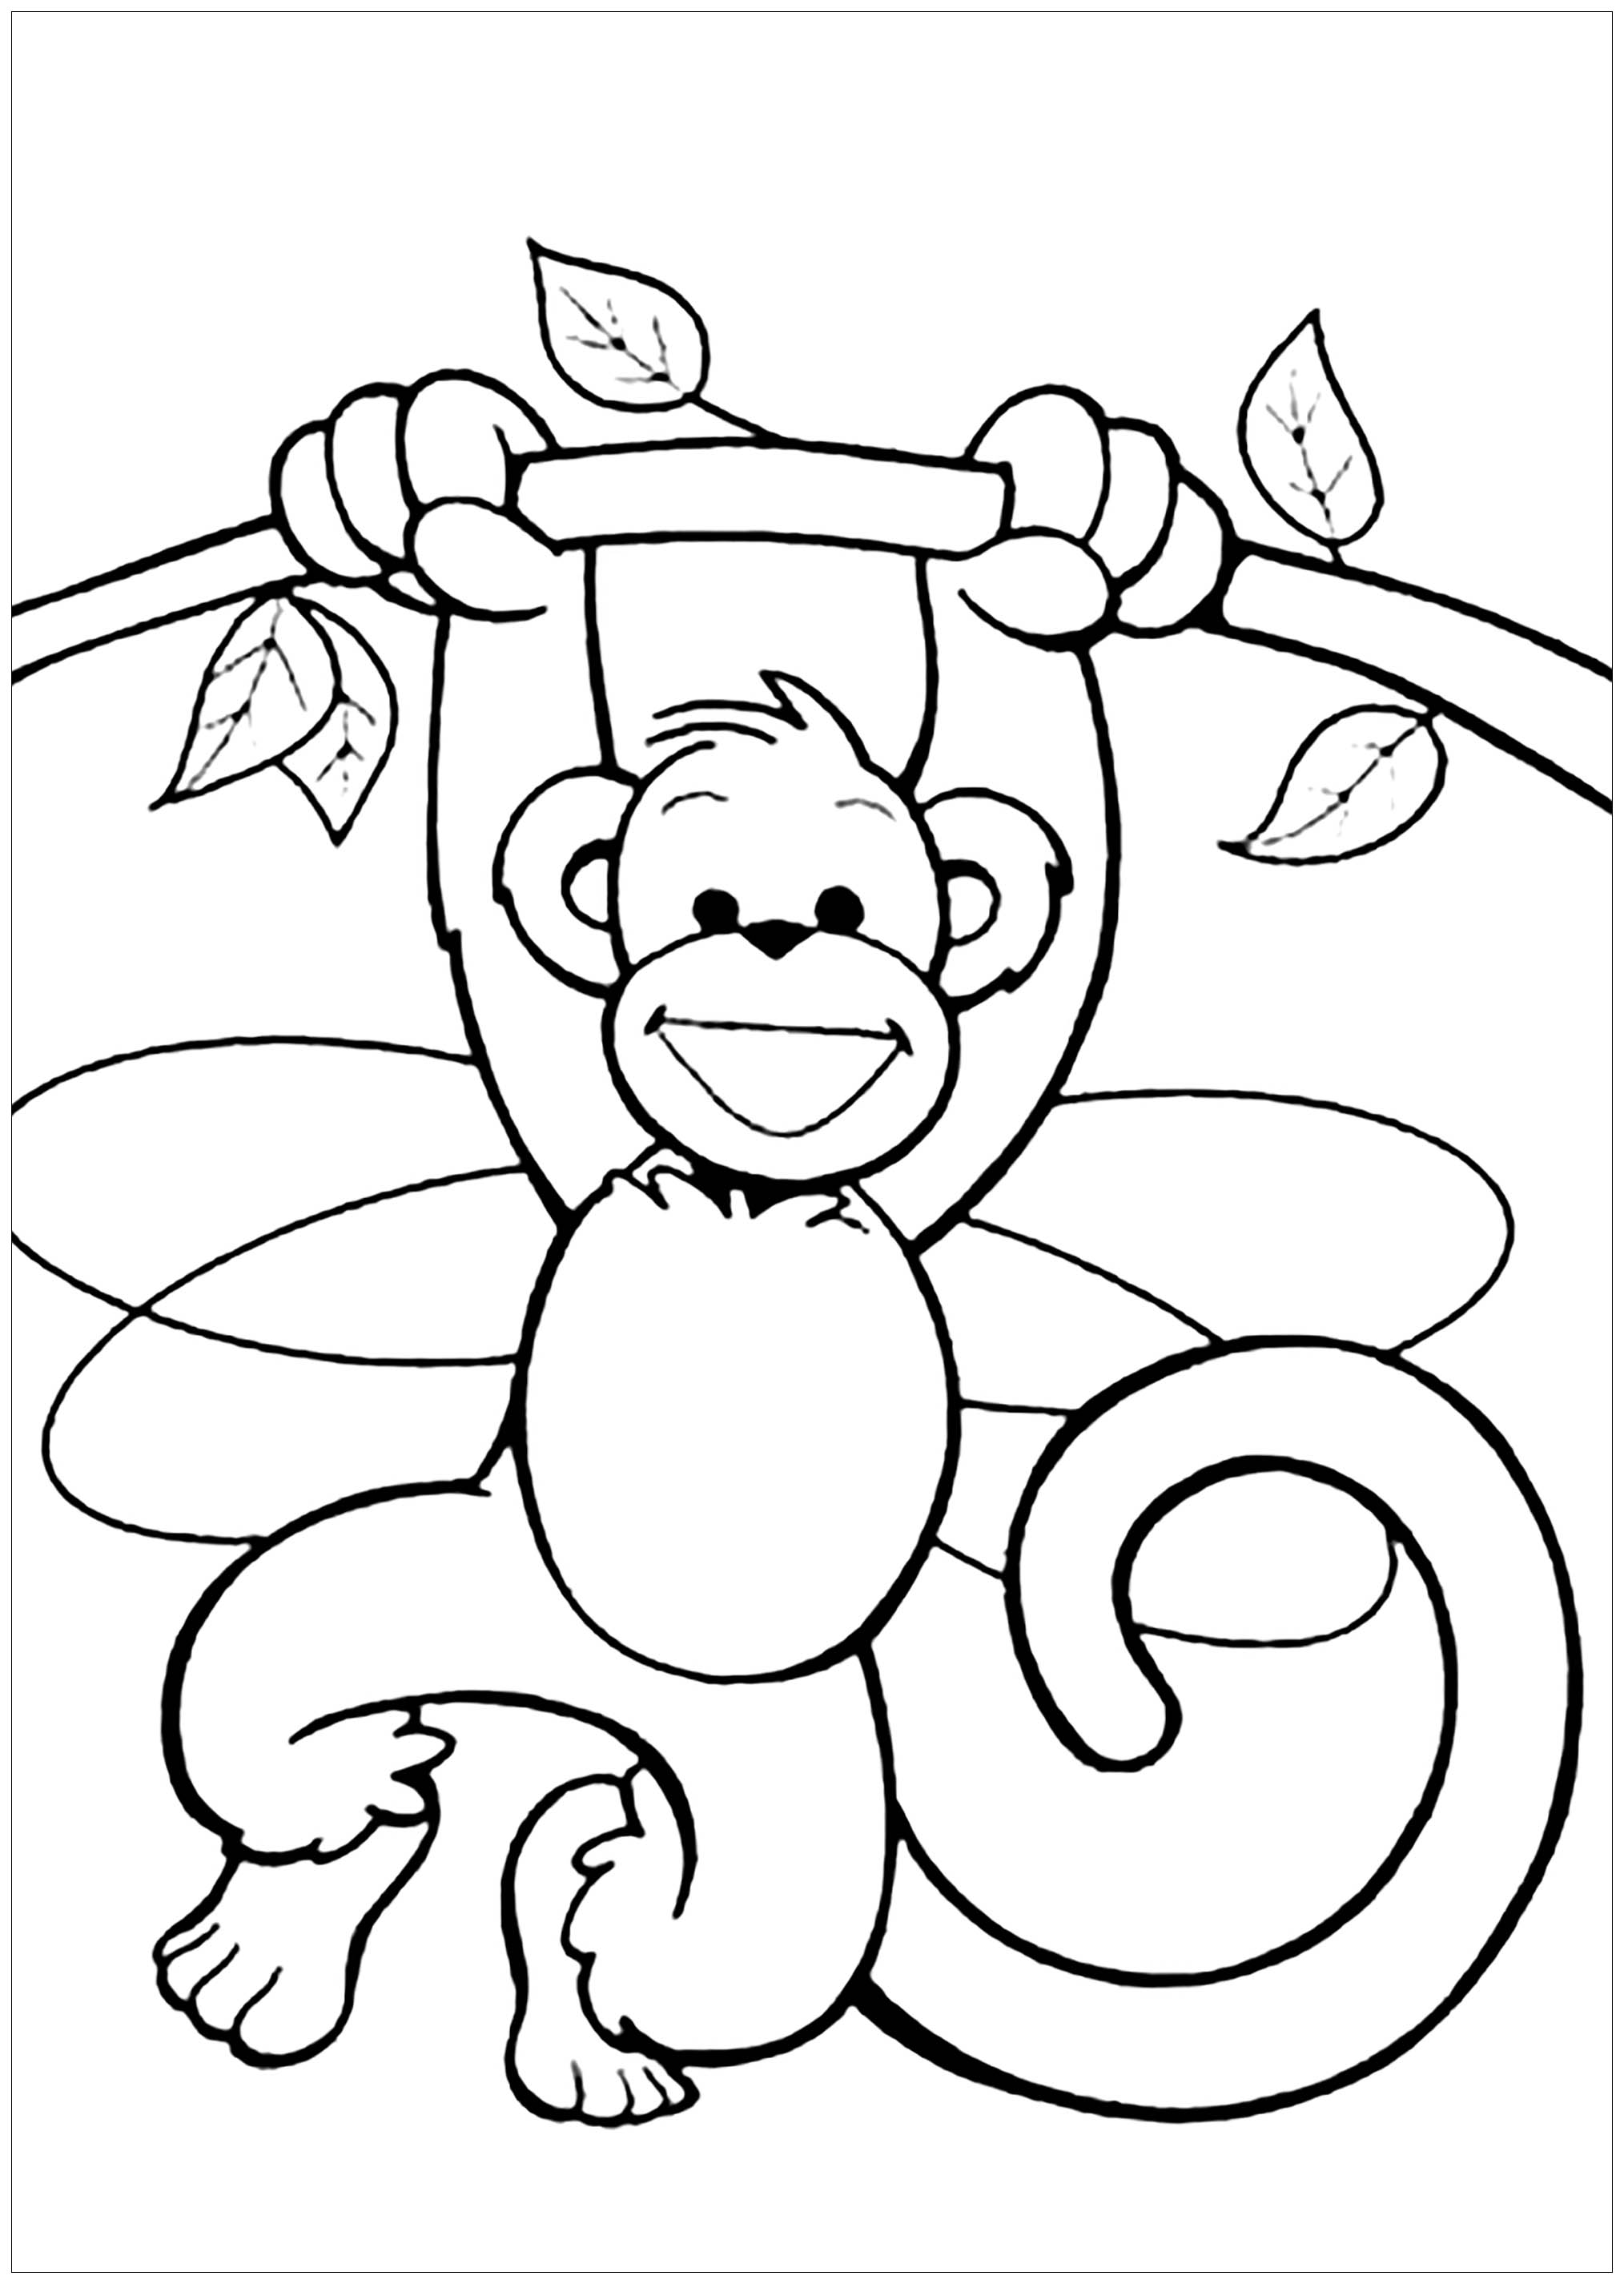 Corante de macaco espantoso para crianças